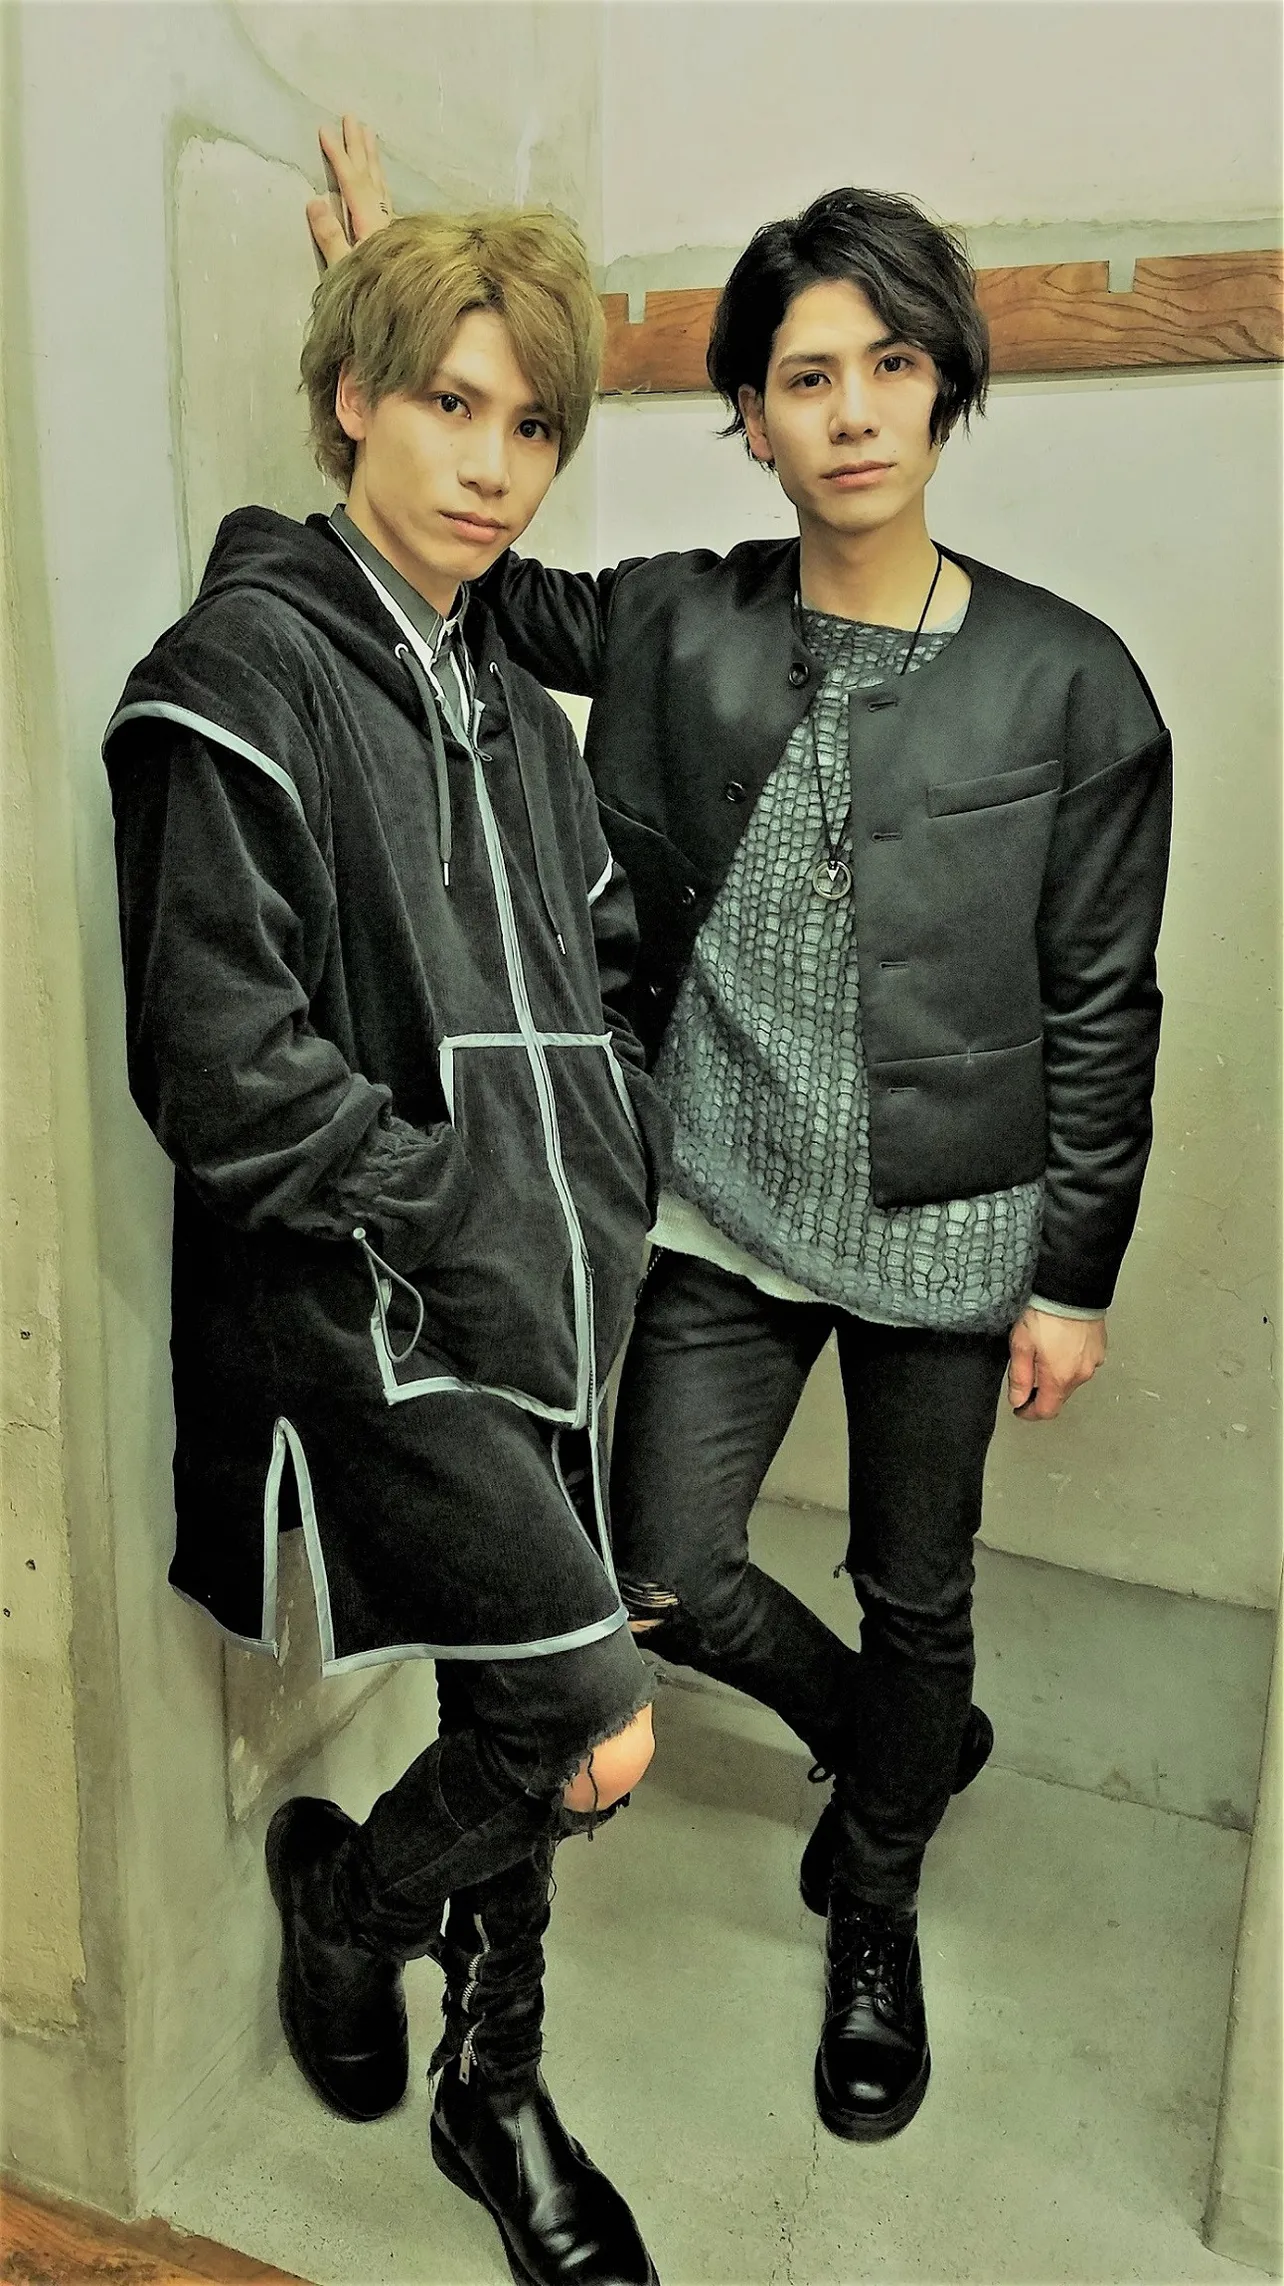 TWiN PARADOX (ツイン パラドックス)＝双子の兄・二葉勇(ふたば・ゆう / 写真右)と弟・二葉要(ふたば・かなめ / 写真左)によるツインボーカルユニット。ともに1991年4月8日生まれ、大阪府出身